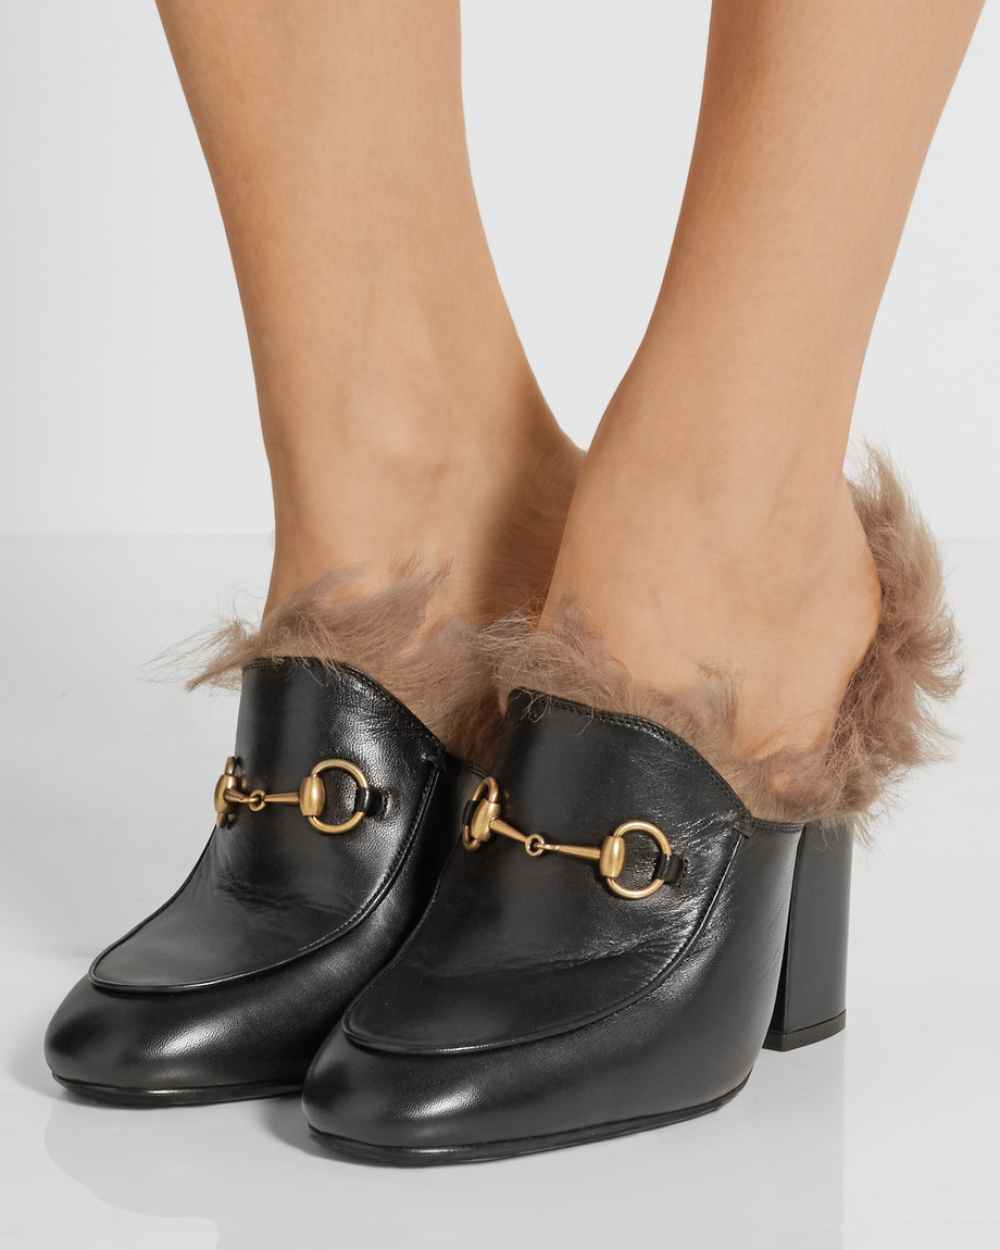 Gucci heels, $912